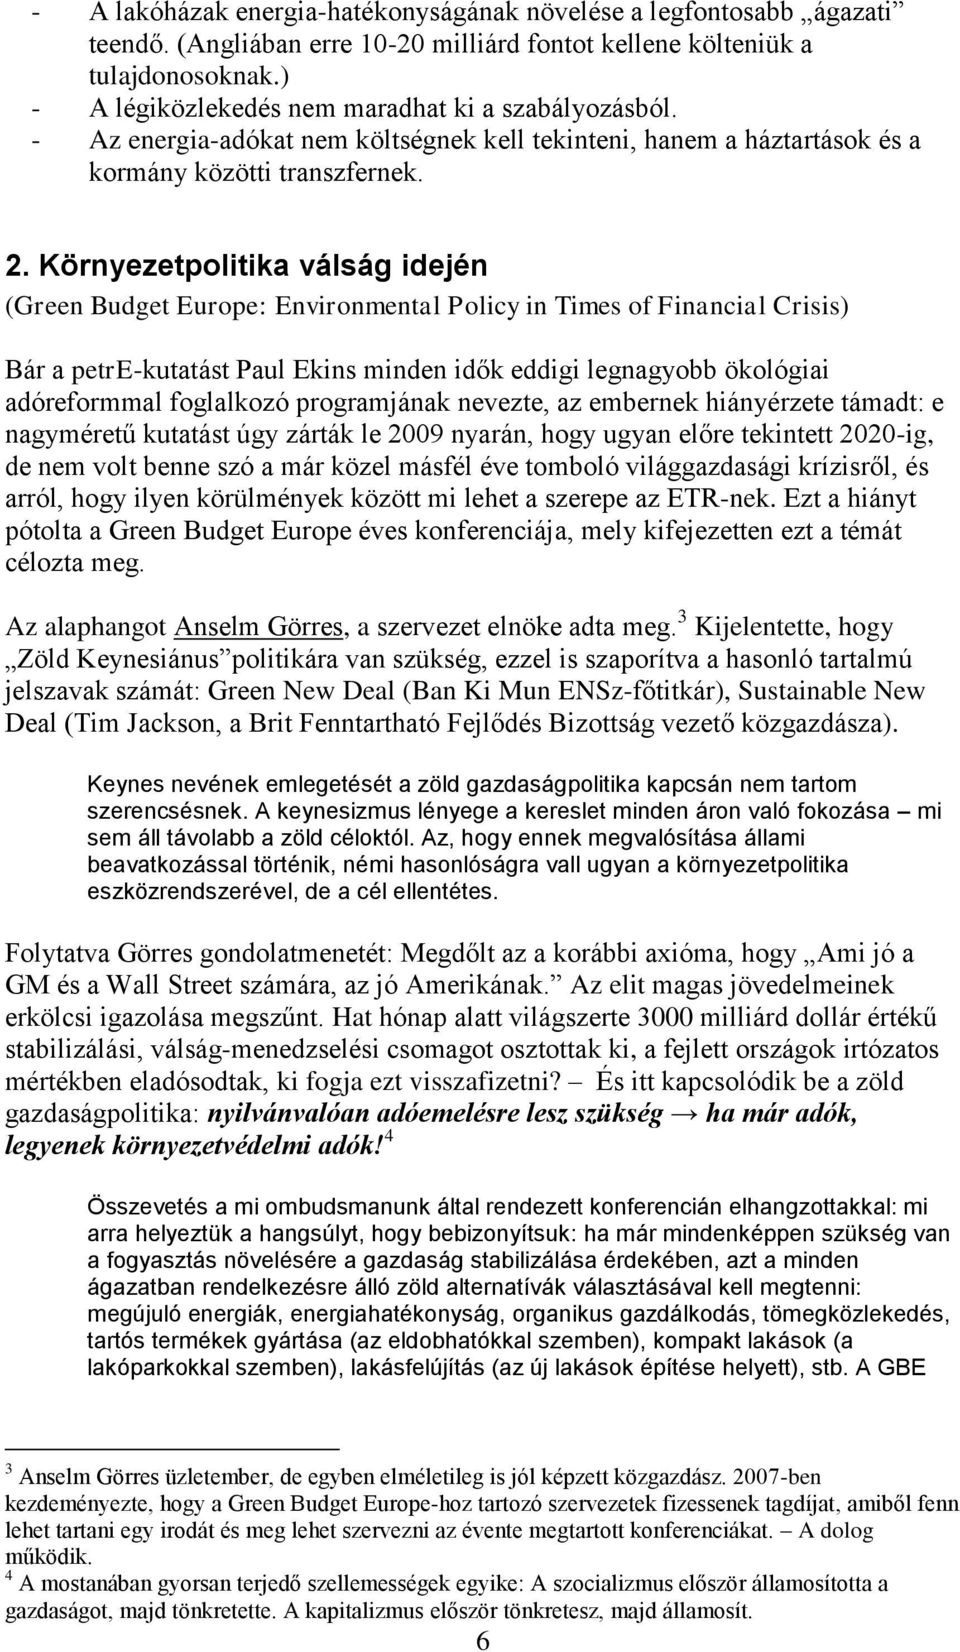 Környezetpolitika válság idején (Green Budget Europe: Environmental Policy in Times of Financial Crisis) Bár a petre-kutatást Paul Ekins minden idők eddigi legnagyobb ökológiai adóreformmal